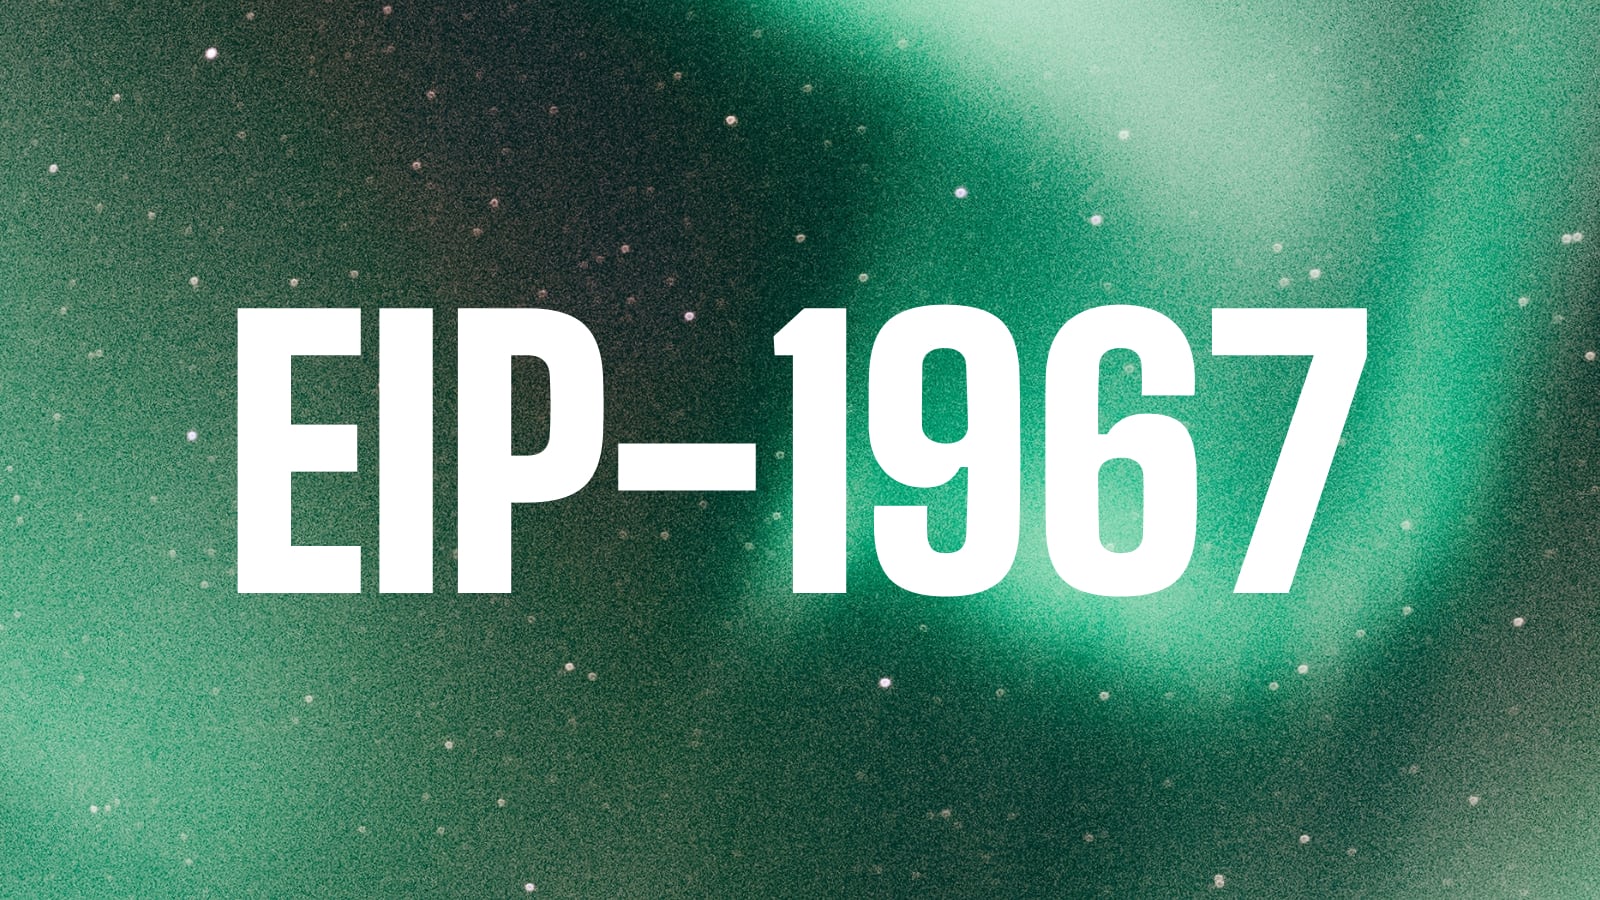 EIP-1967